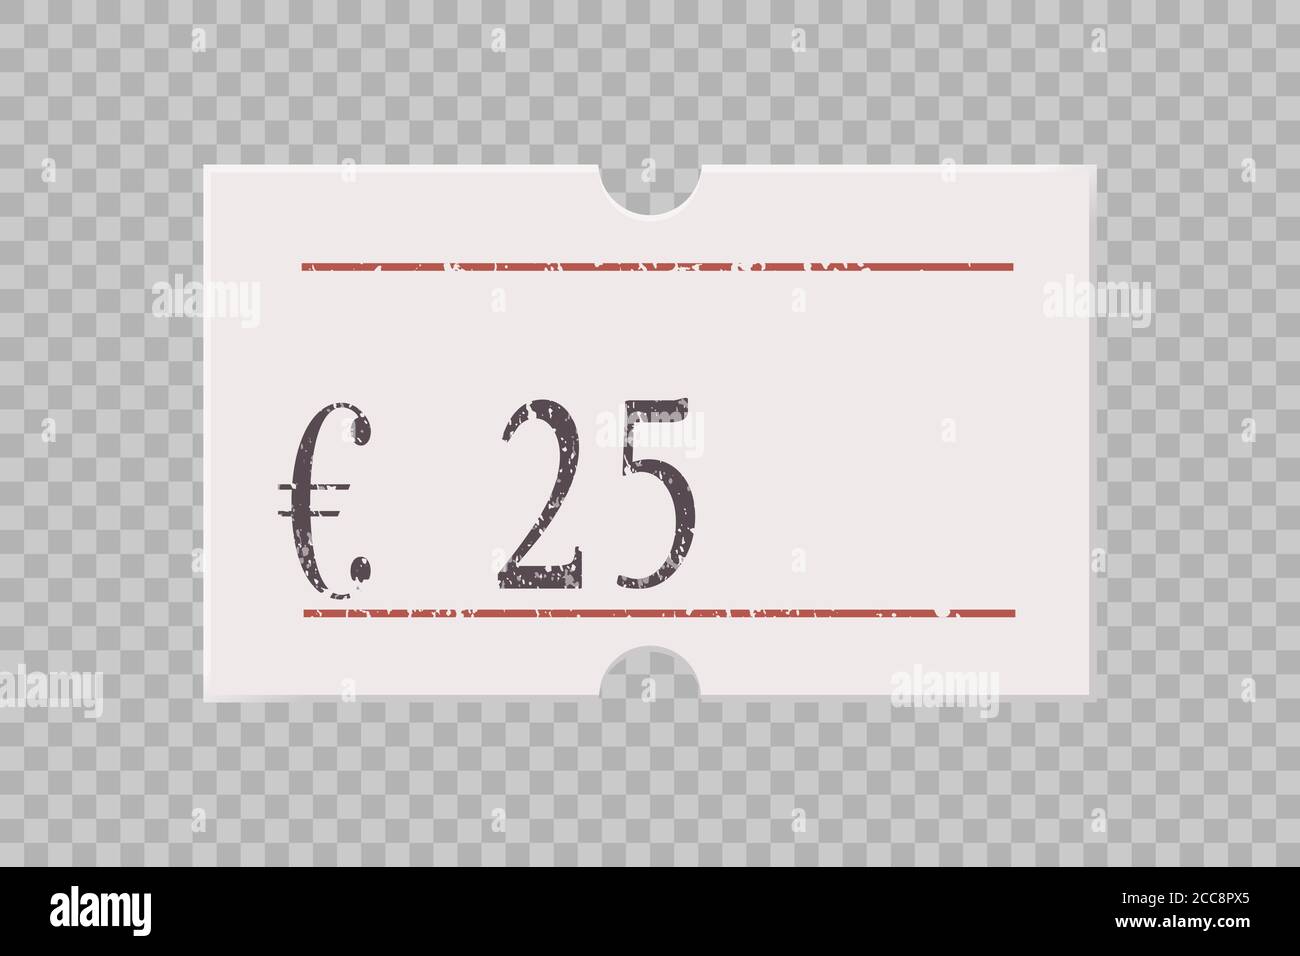 Etichetta prezzo euro con numeri di cifre isolati su sfondo trasparente. Adesivo cartaceo, etichetta, badge per prodotti e prodotti diversi. Vettore realistico Illustrazione Vettoriale